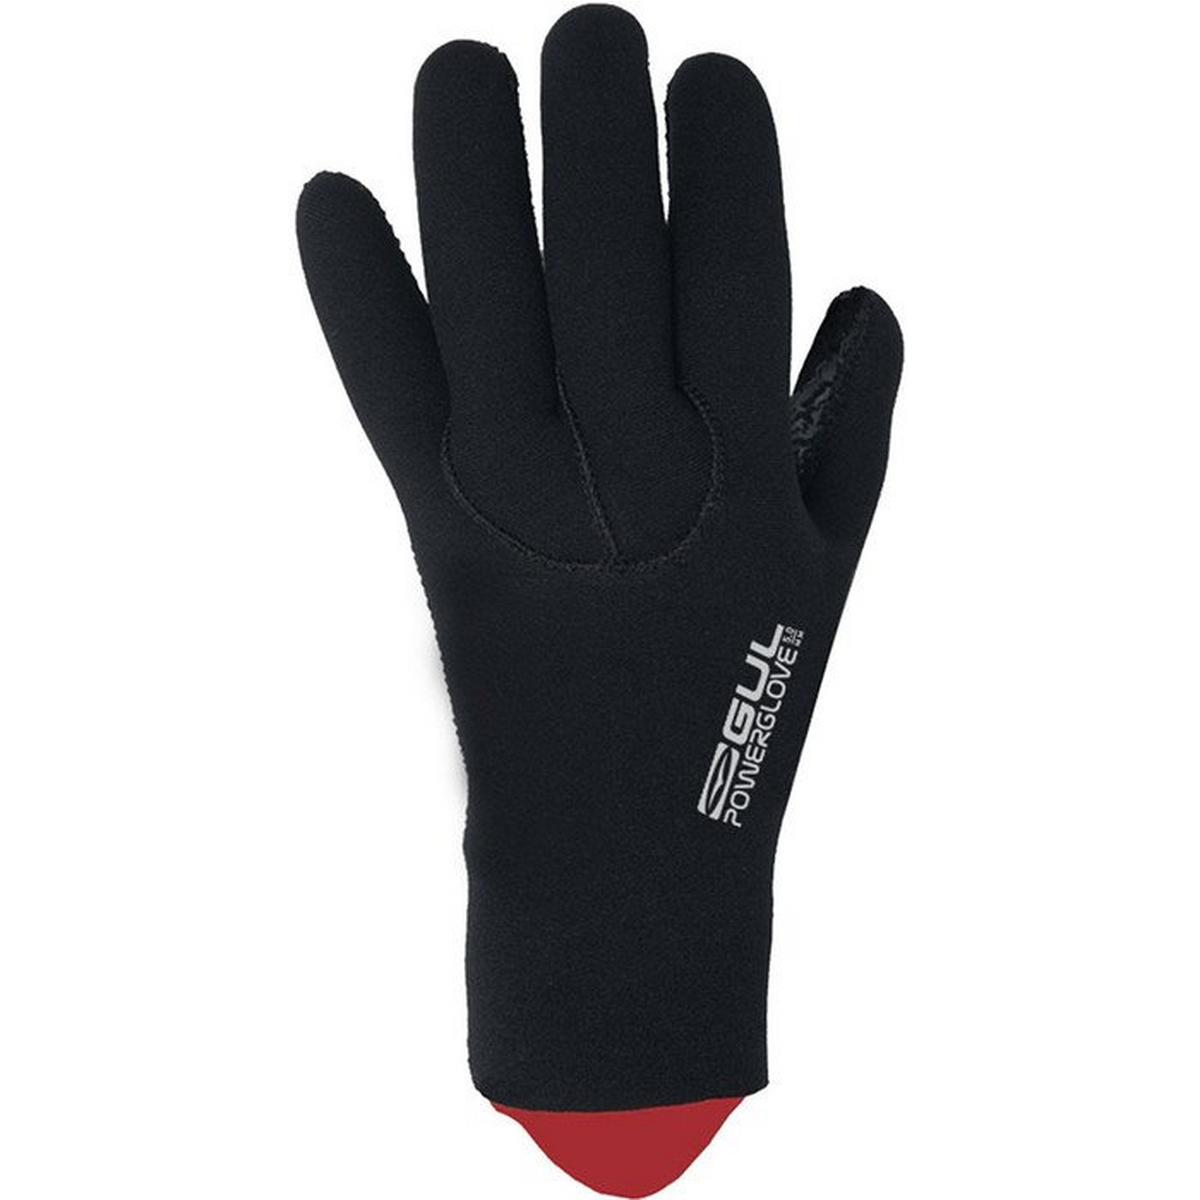 Gul Unisex 5mm Power Gloves